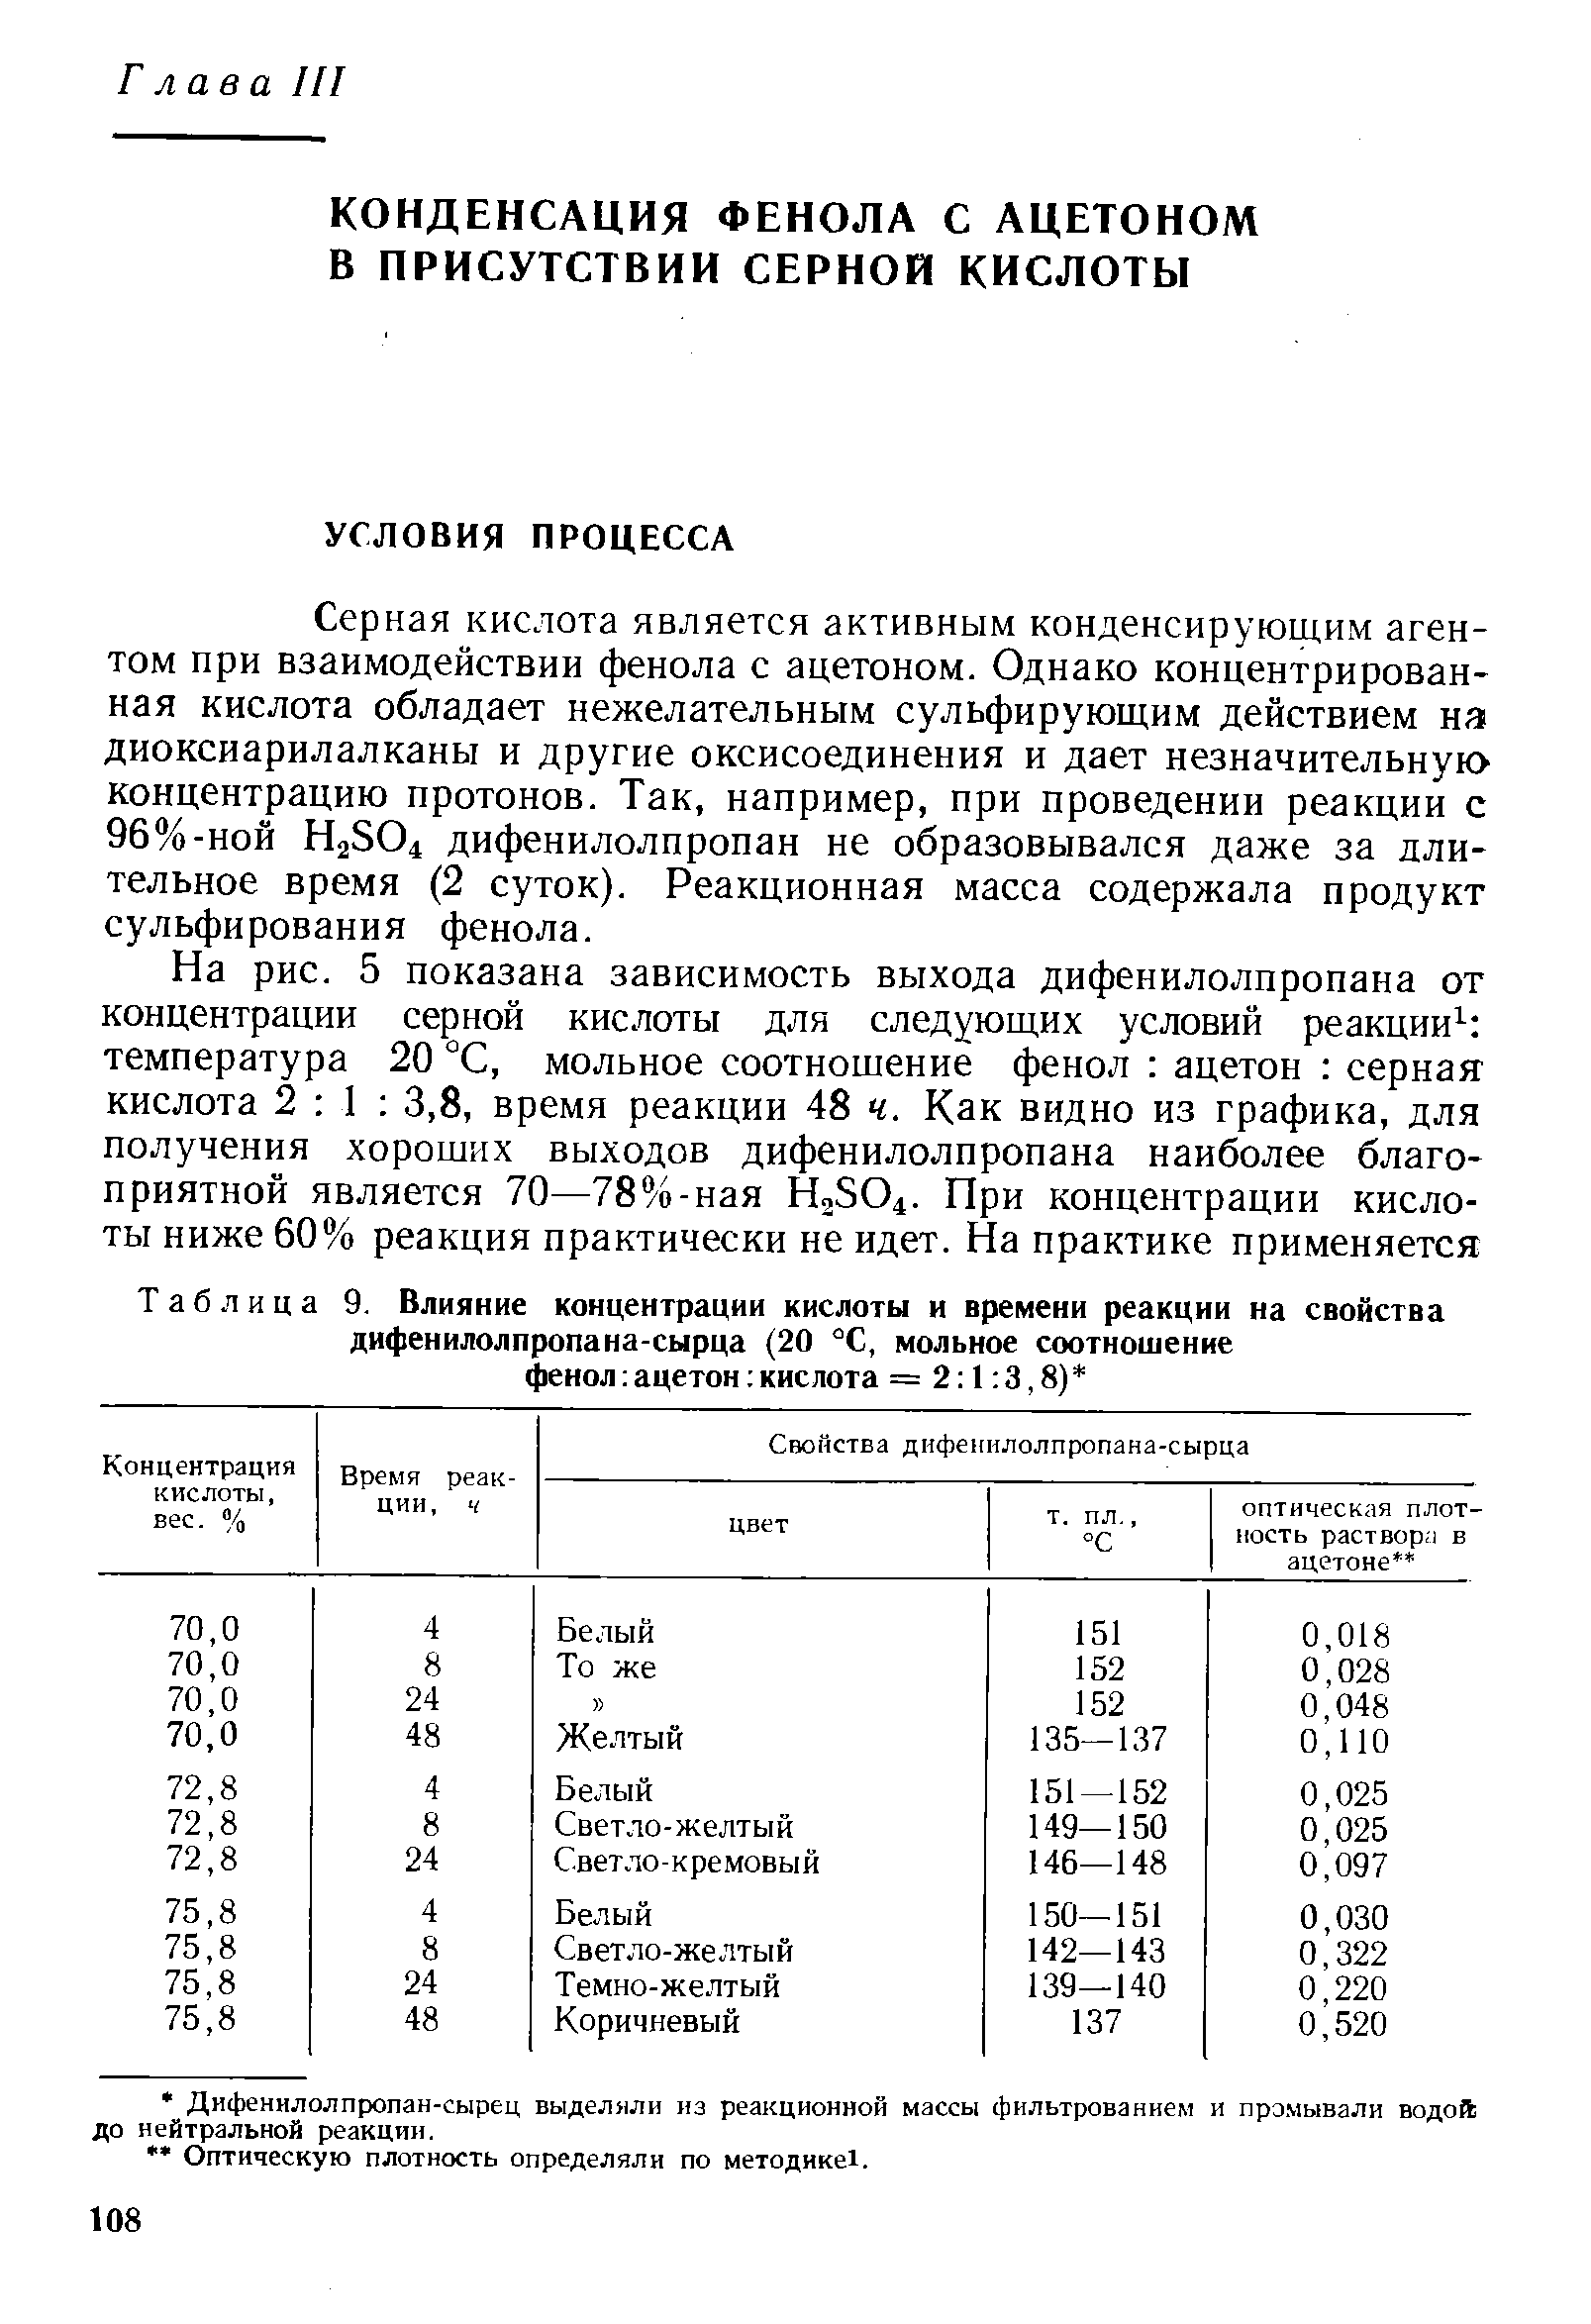 Серная кислота является активным конденсирующим агентом при взаимодействии фенола с ацетоном. Однако концентрированная кислота обладает нежелательным сульфирующим действием на диоксиарилалканы и другие оксисоединения и дает незначительную концентрацию протонов. Так, например, при проведении реакции с 96%-НОЙ НаЗО дифенилолпропан не образовывался даже за длительное время (2 суток). Реакционная масса содержала продукт сульфирования фенола.